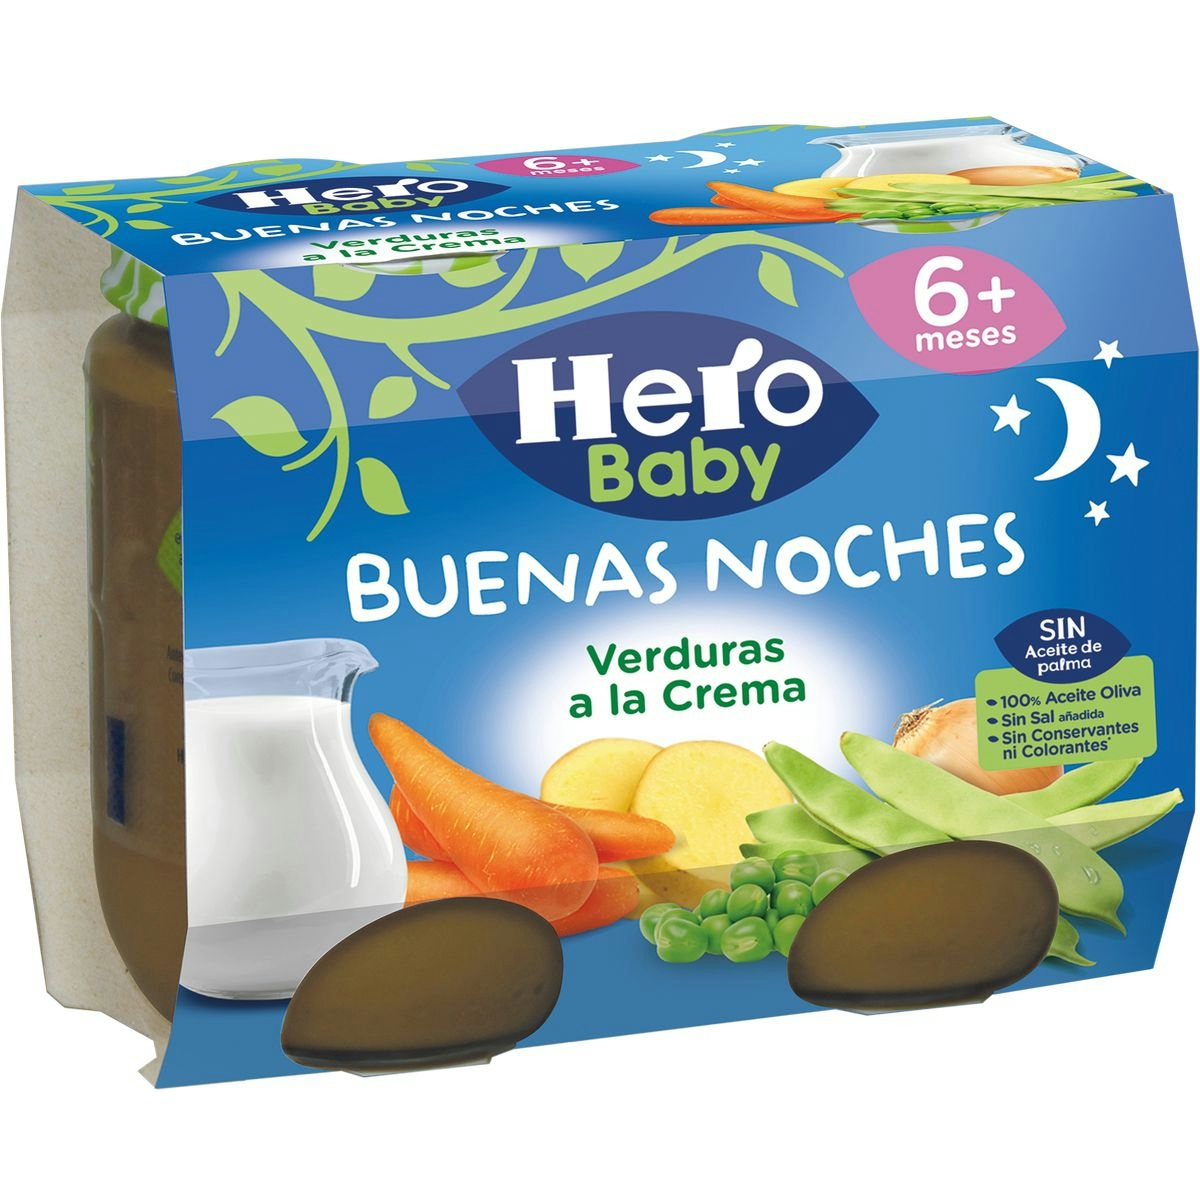 Tarrito buenas noches verduras a la crema hero 2x190 gr